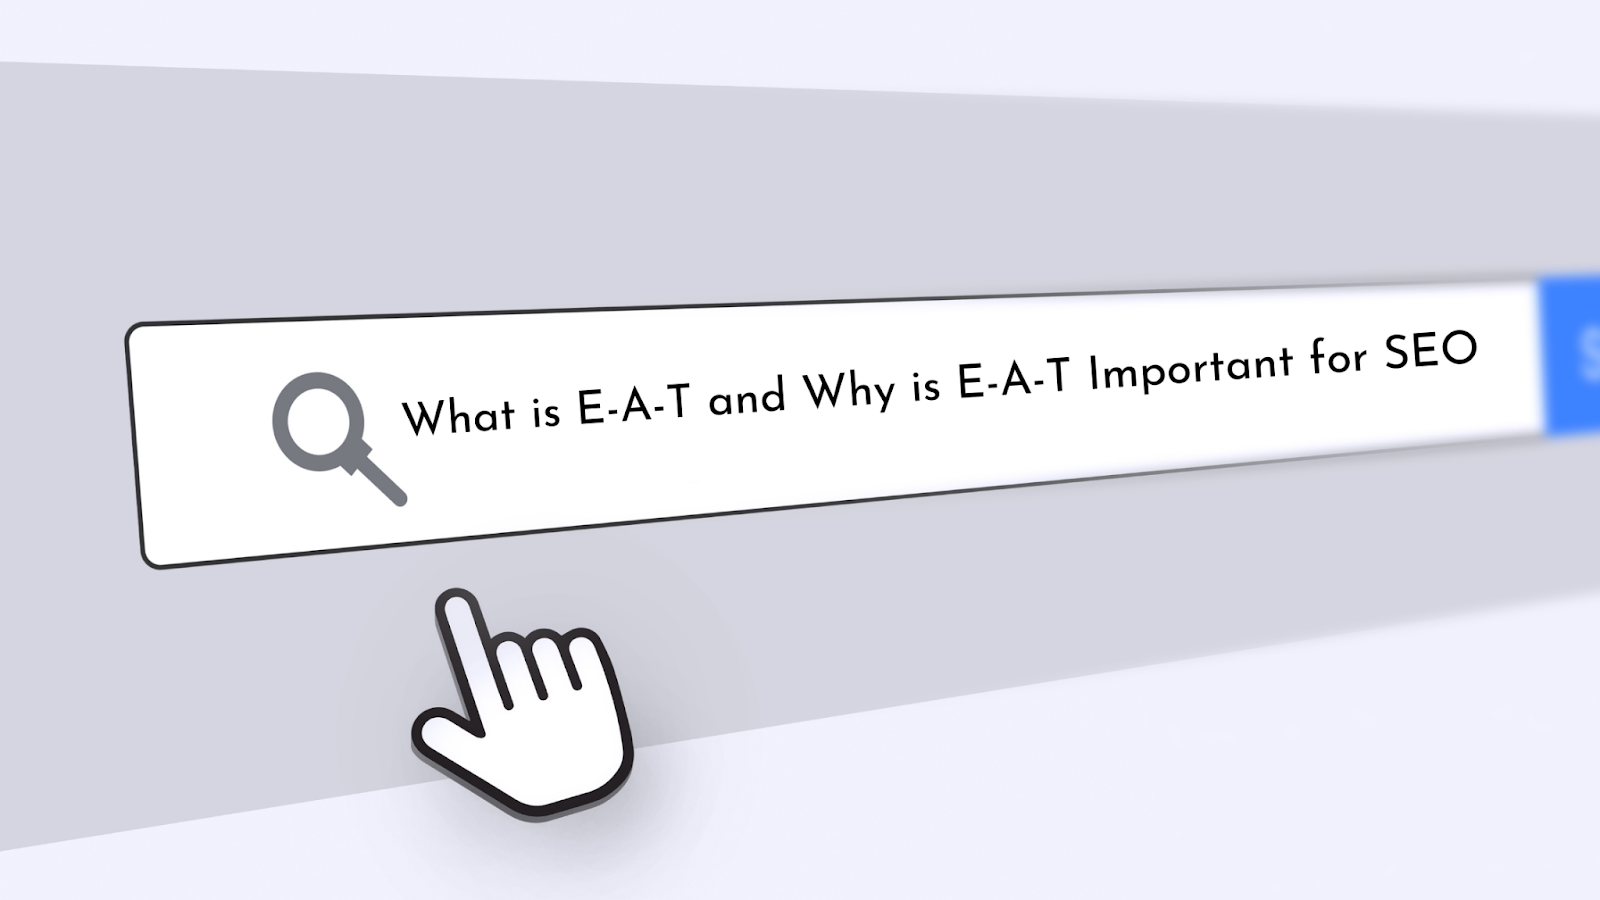 What is E-A-T and Why is E-A-T Important for SEO